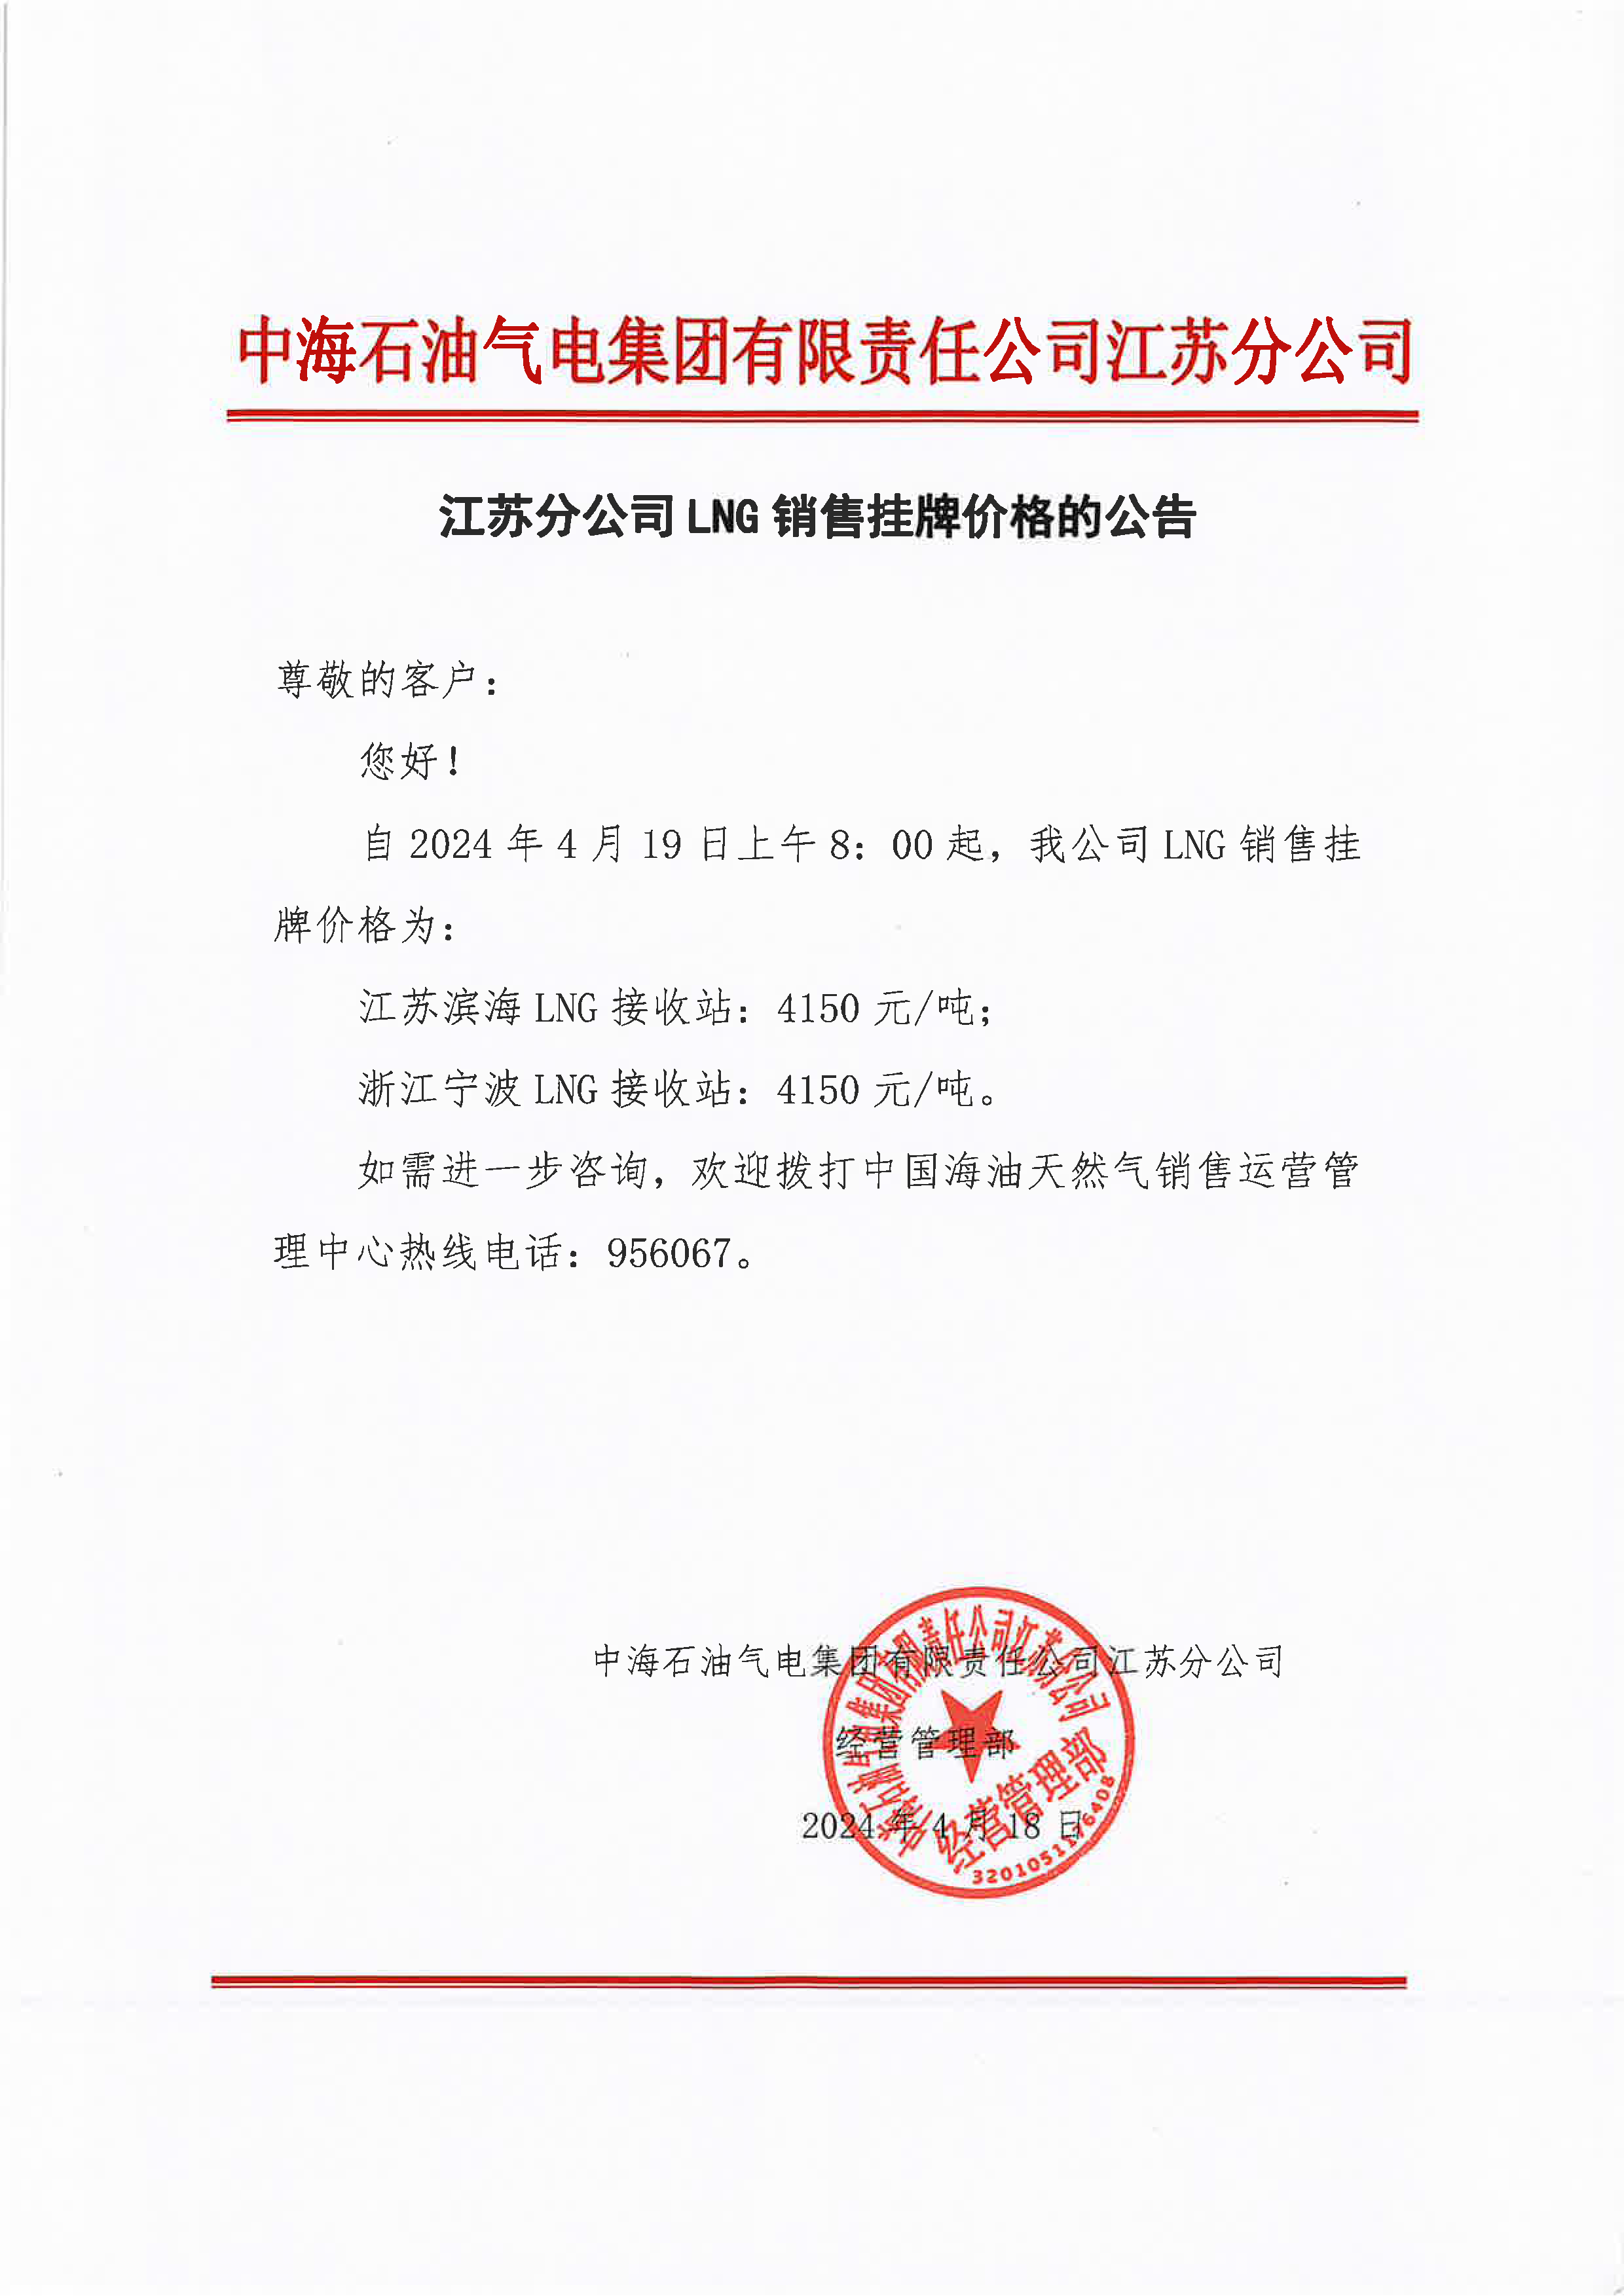 中海油江苏分公司关于4月19日华东苏皖市场价格调整公告.png